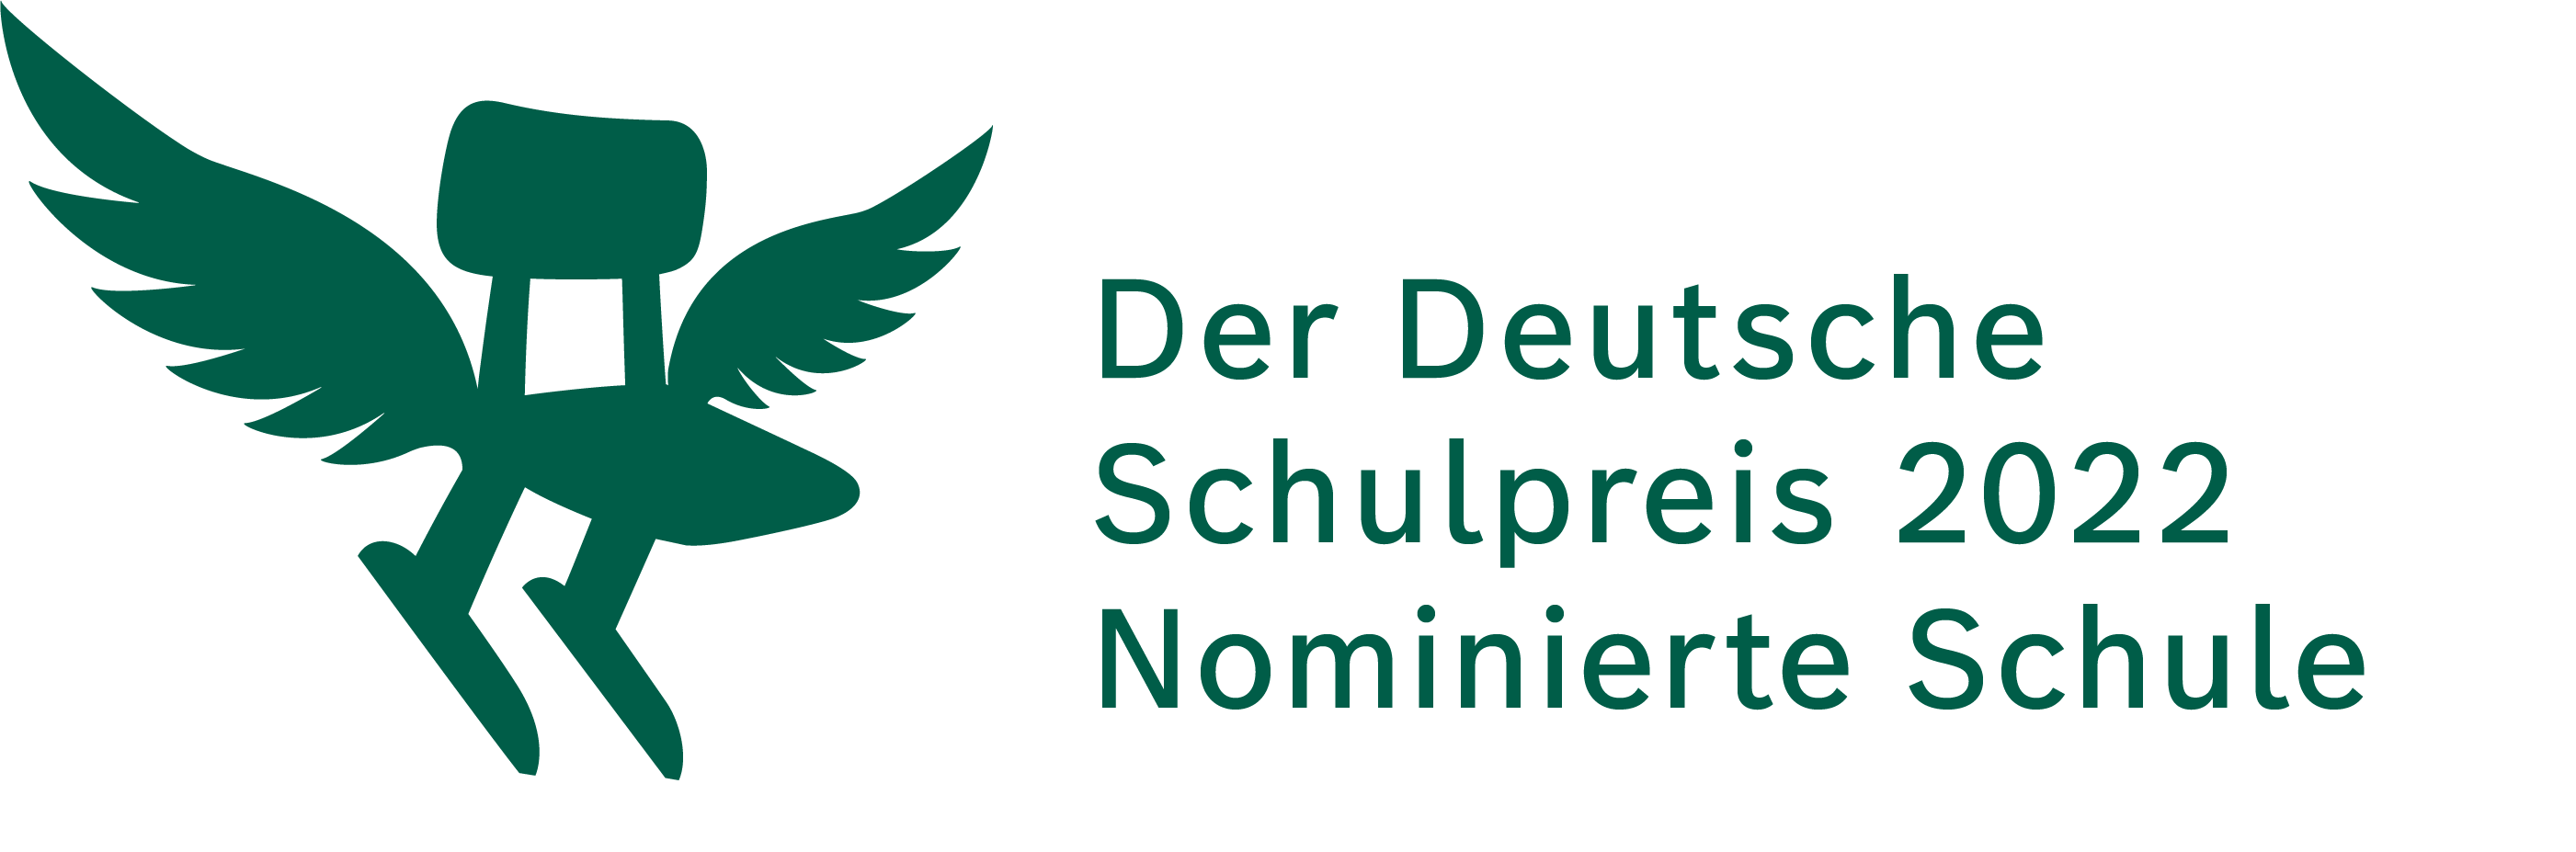 Deutscher Schulpreis 2022